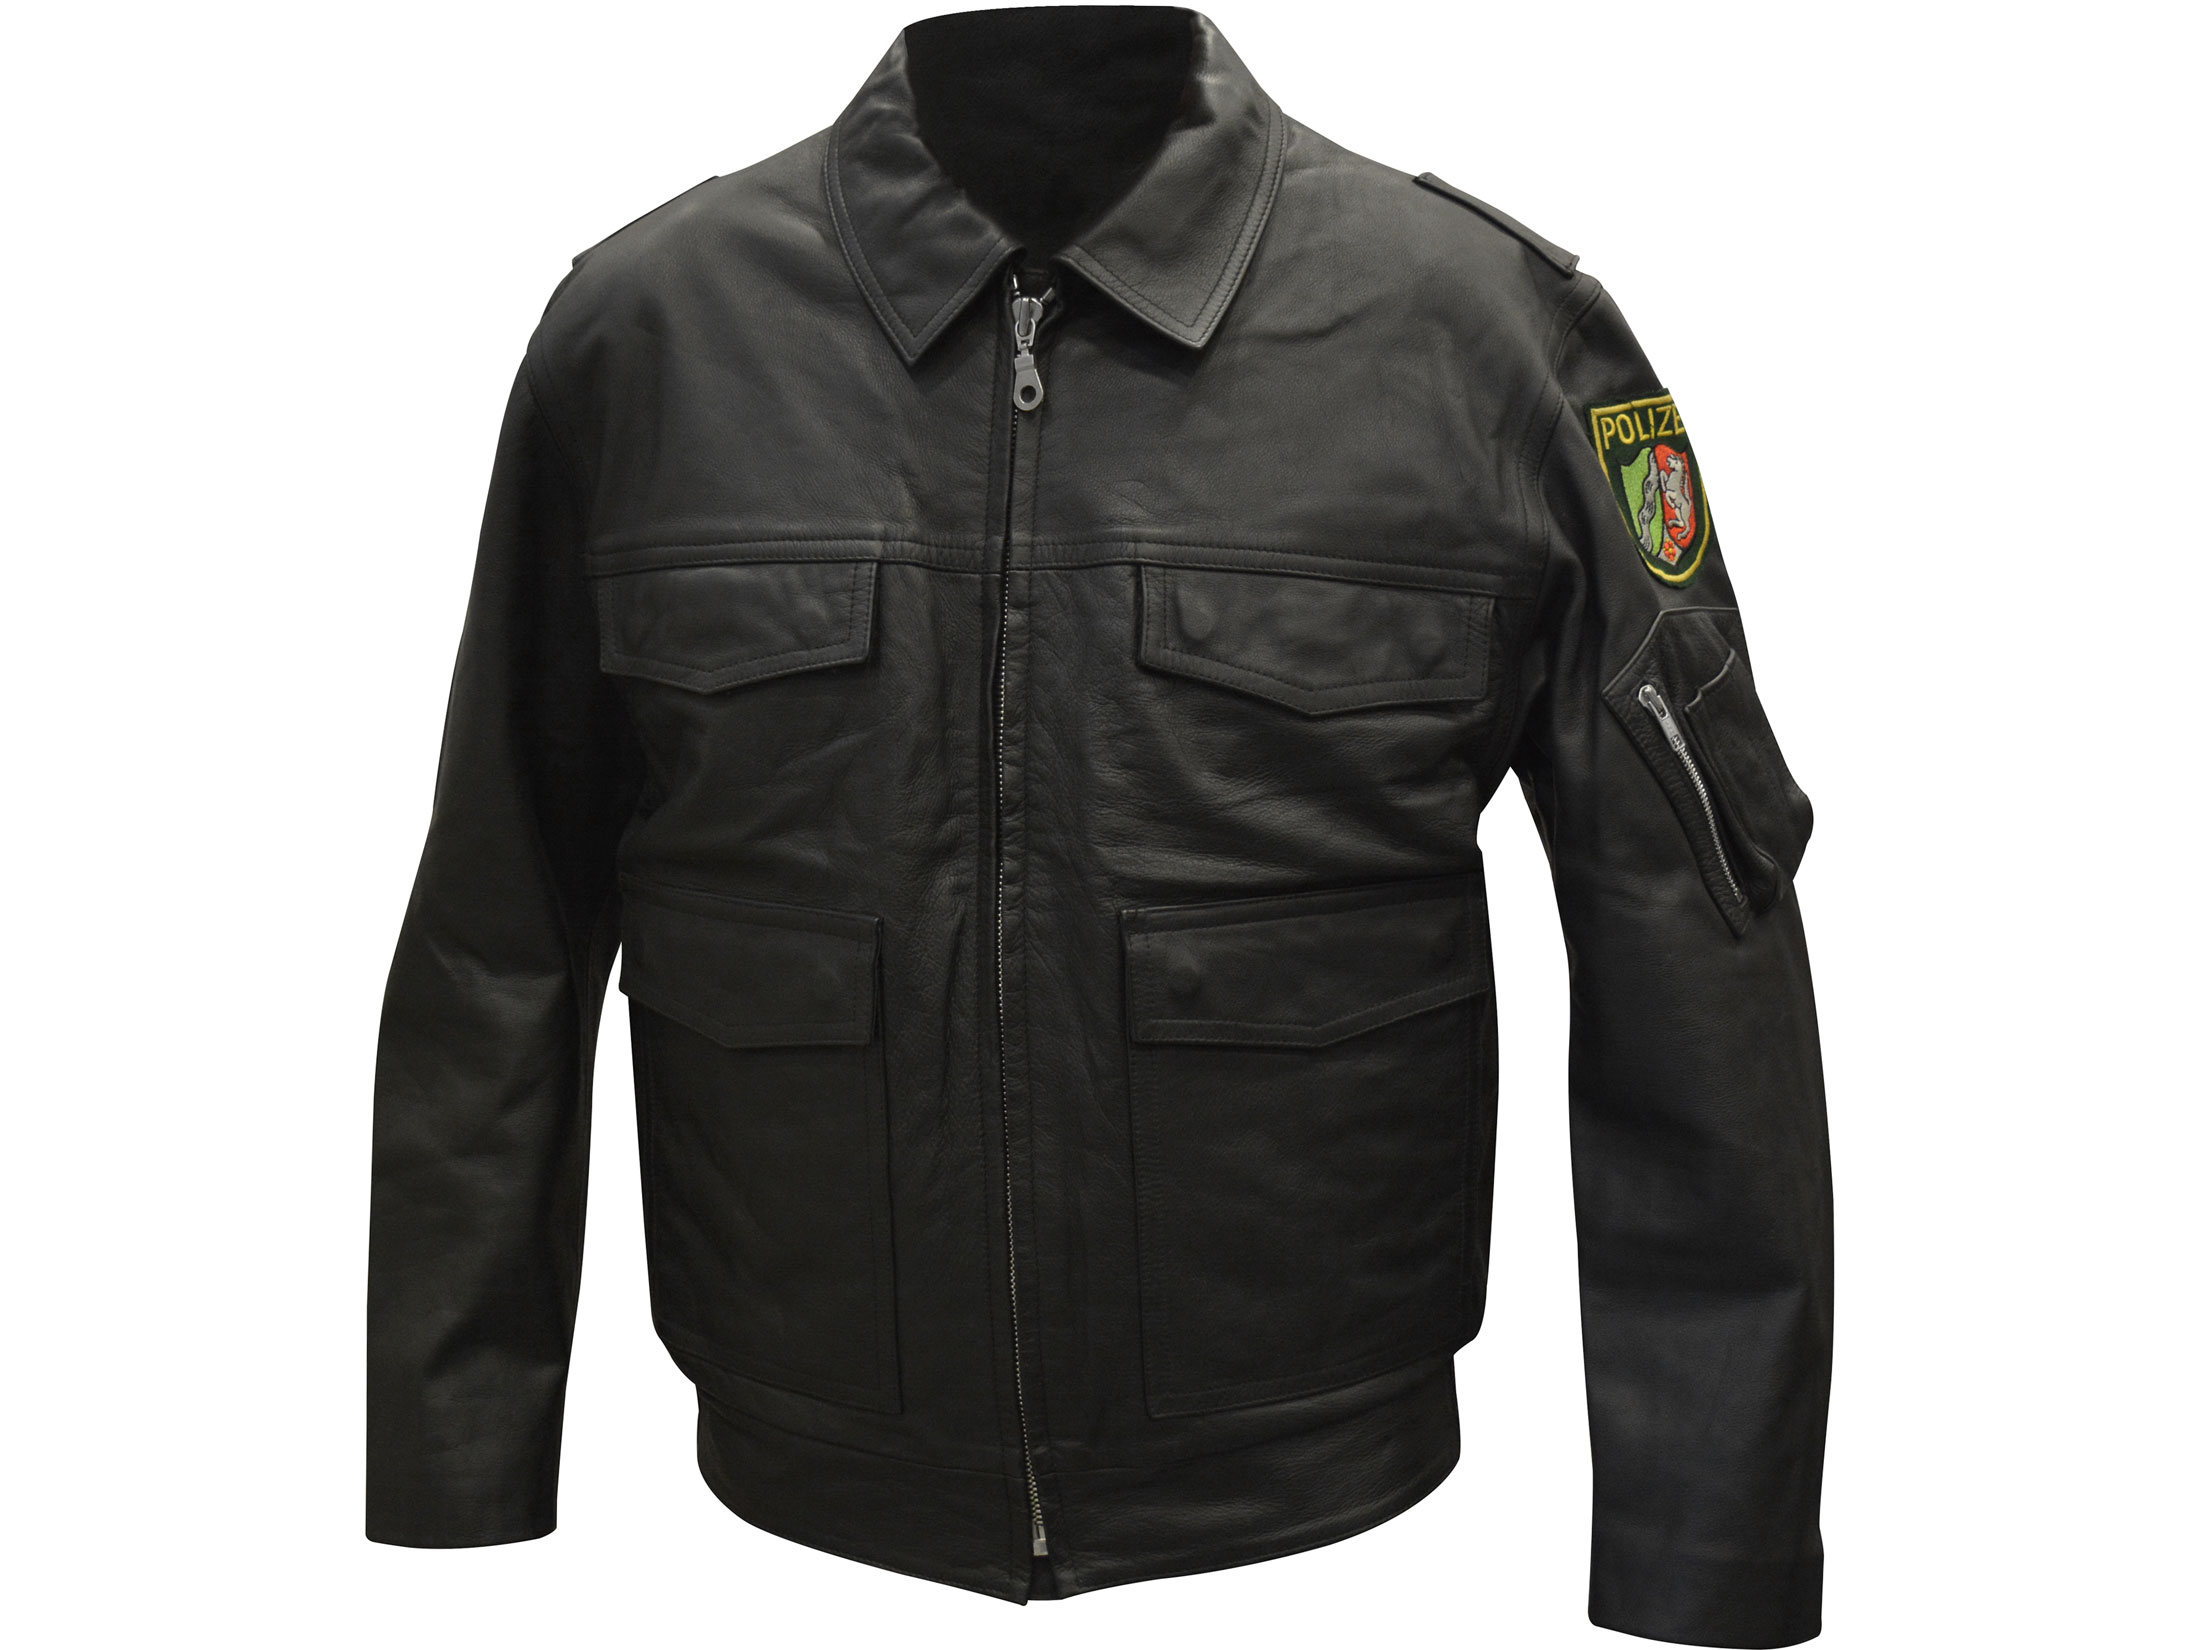 Military Surplus German Police Jacket 